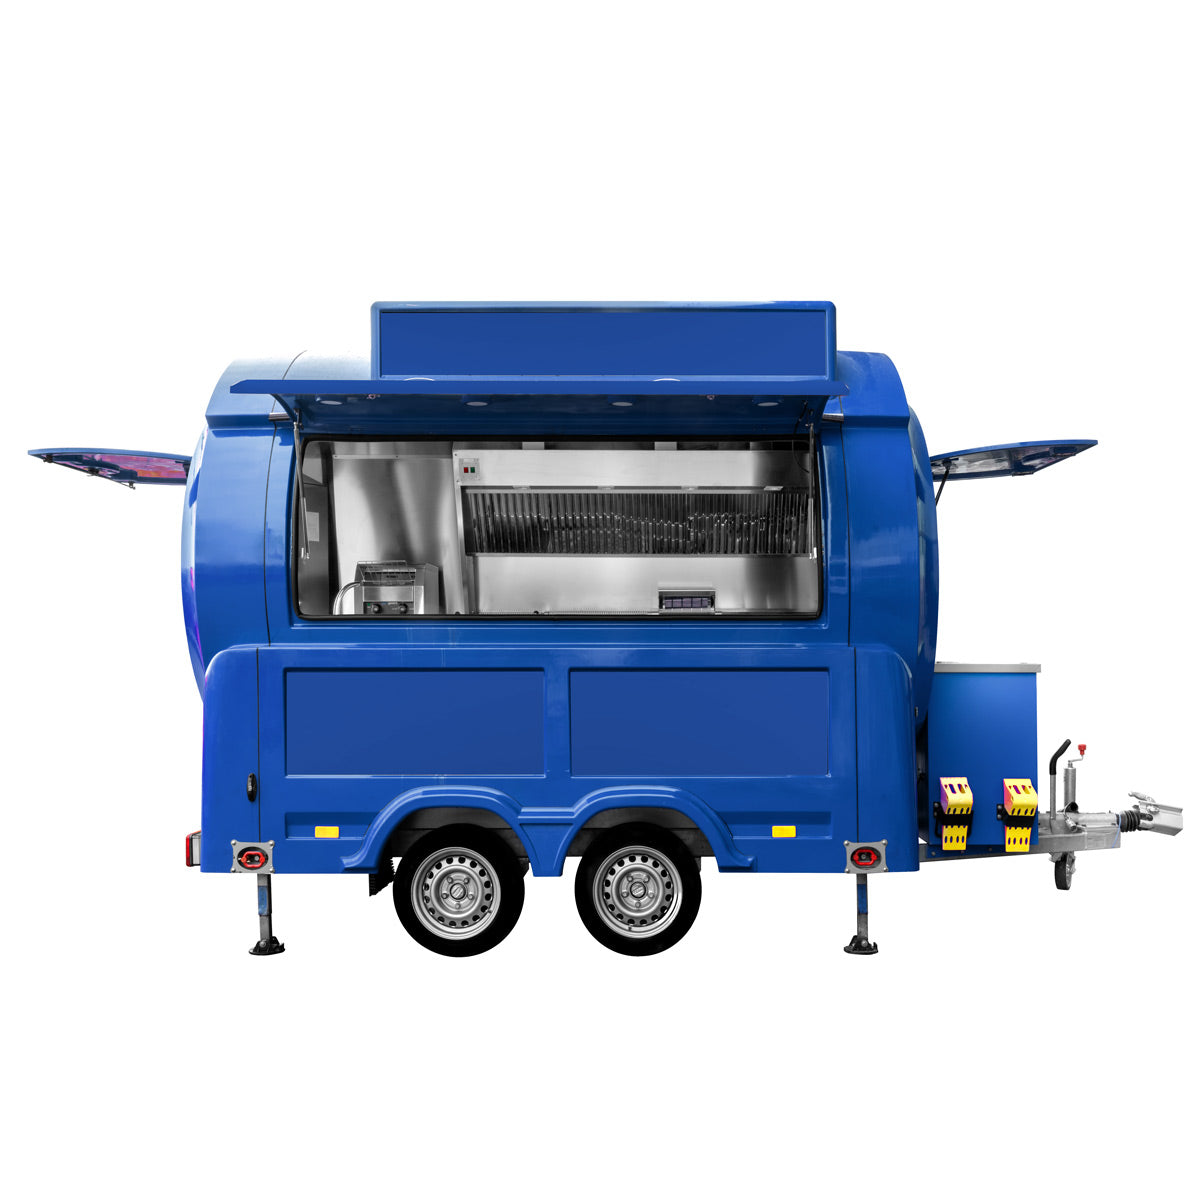 Mobilt køkken af GGM - Tema: Fastfood / basisudstyr